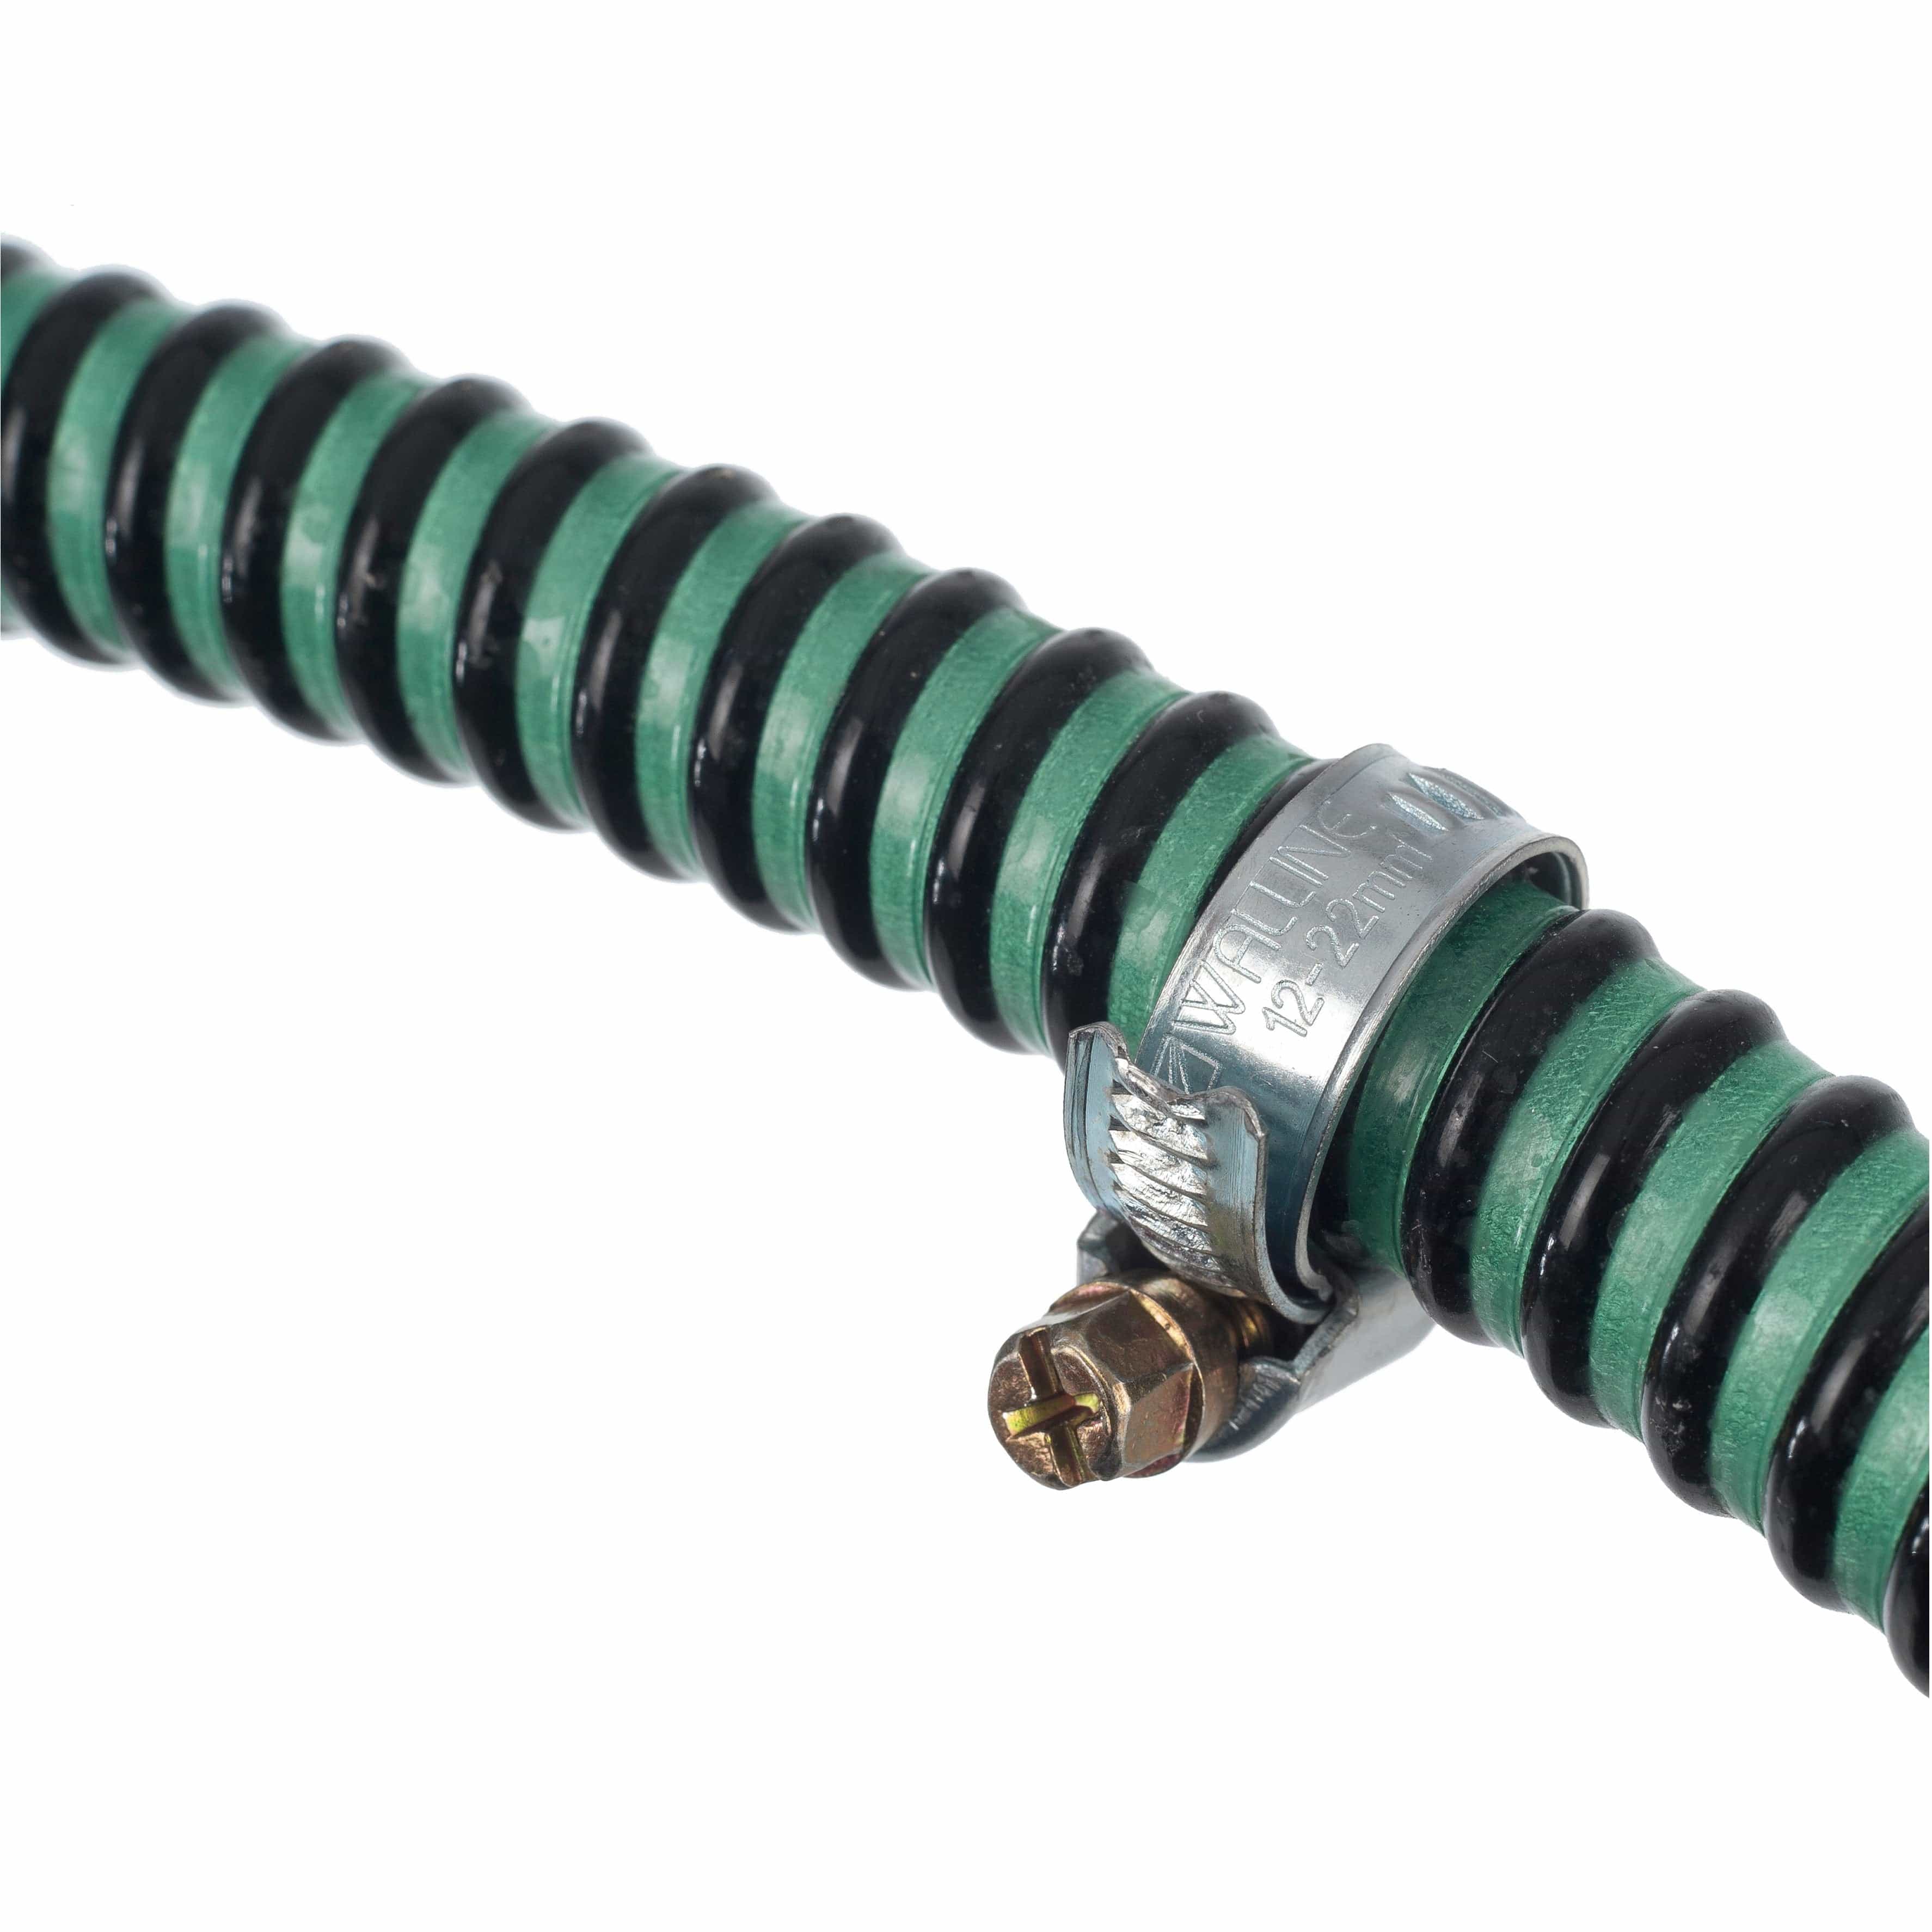 PONDSHOPI UBBINK Colliers de serrage galvanisés pour tuyaux lisses et légers - Ø32 mm - 2 x 8711465101202 1510120